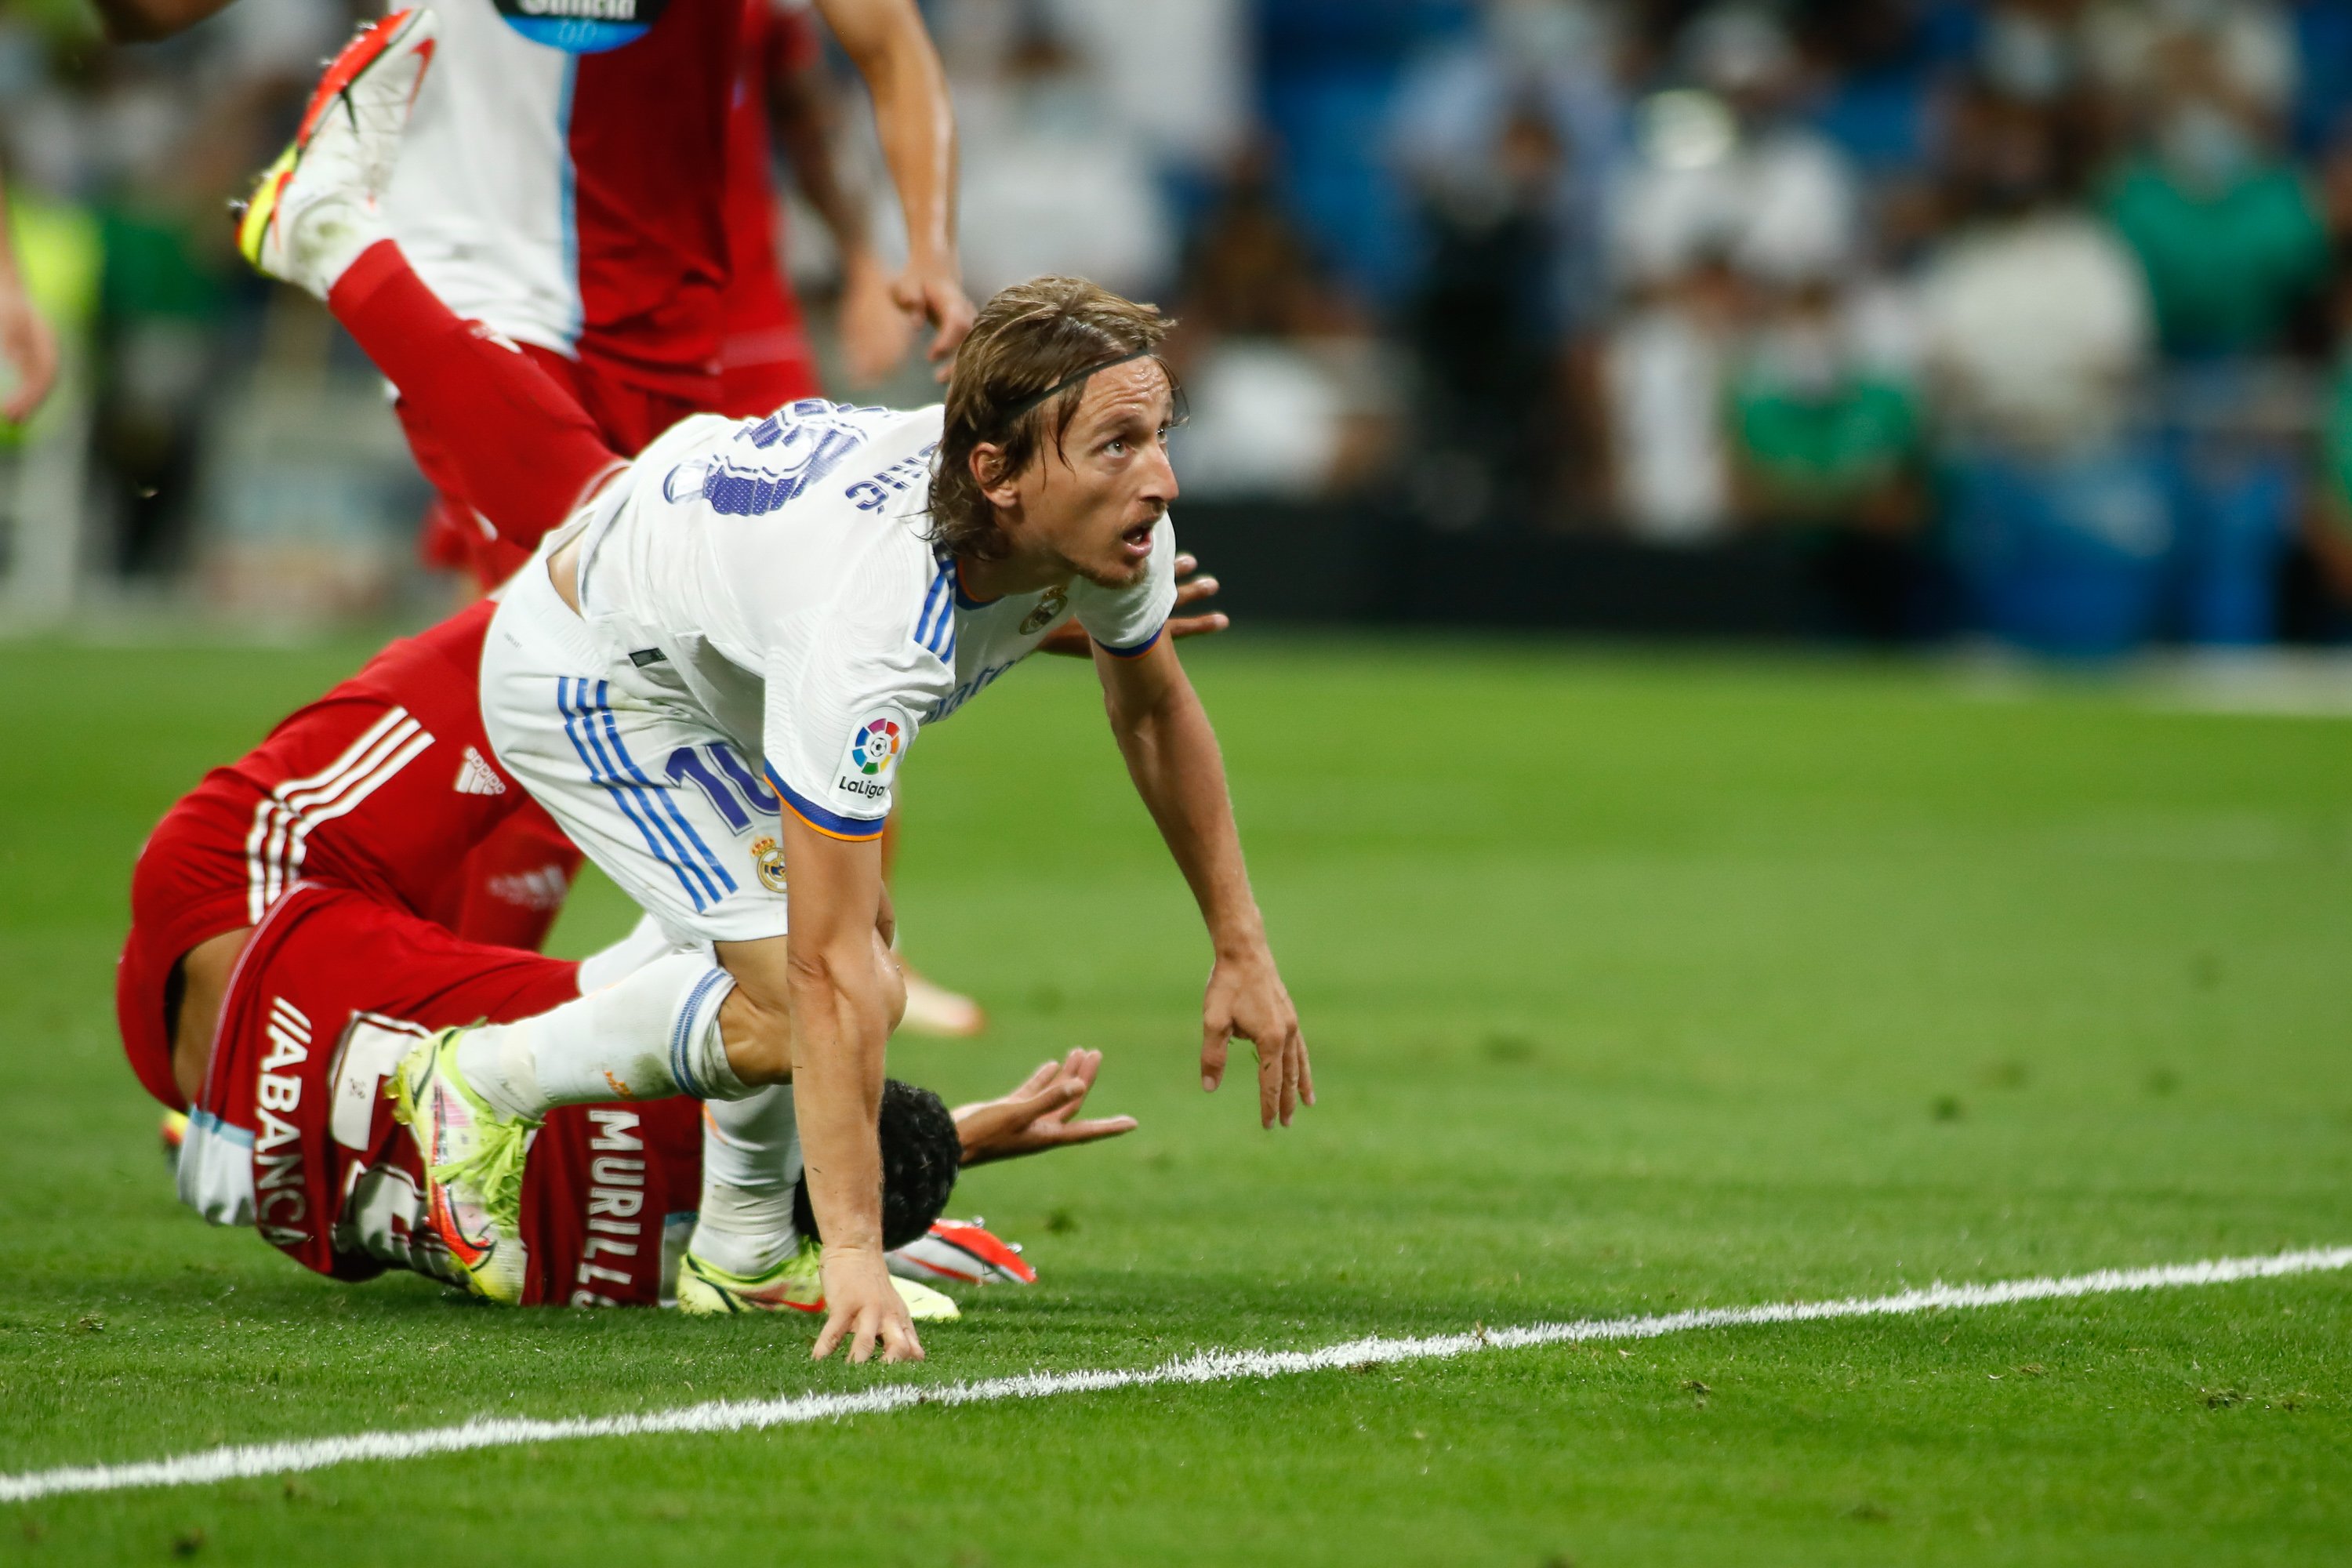 Modric volia marxar a la MLS després del Reial Madrid, però una trucada inesperada canvia els seus plans